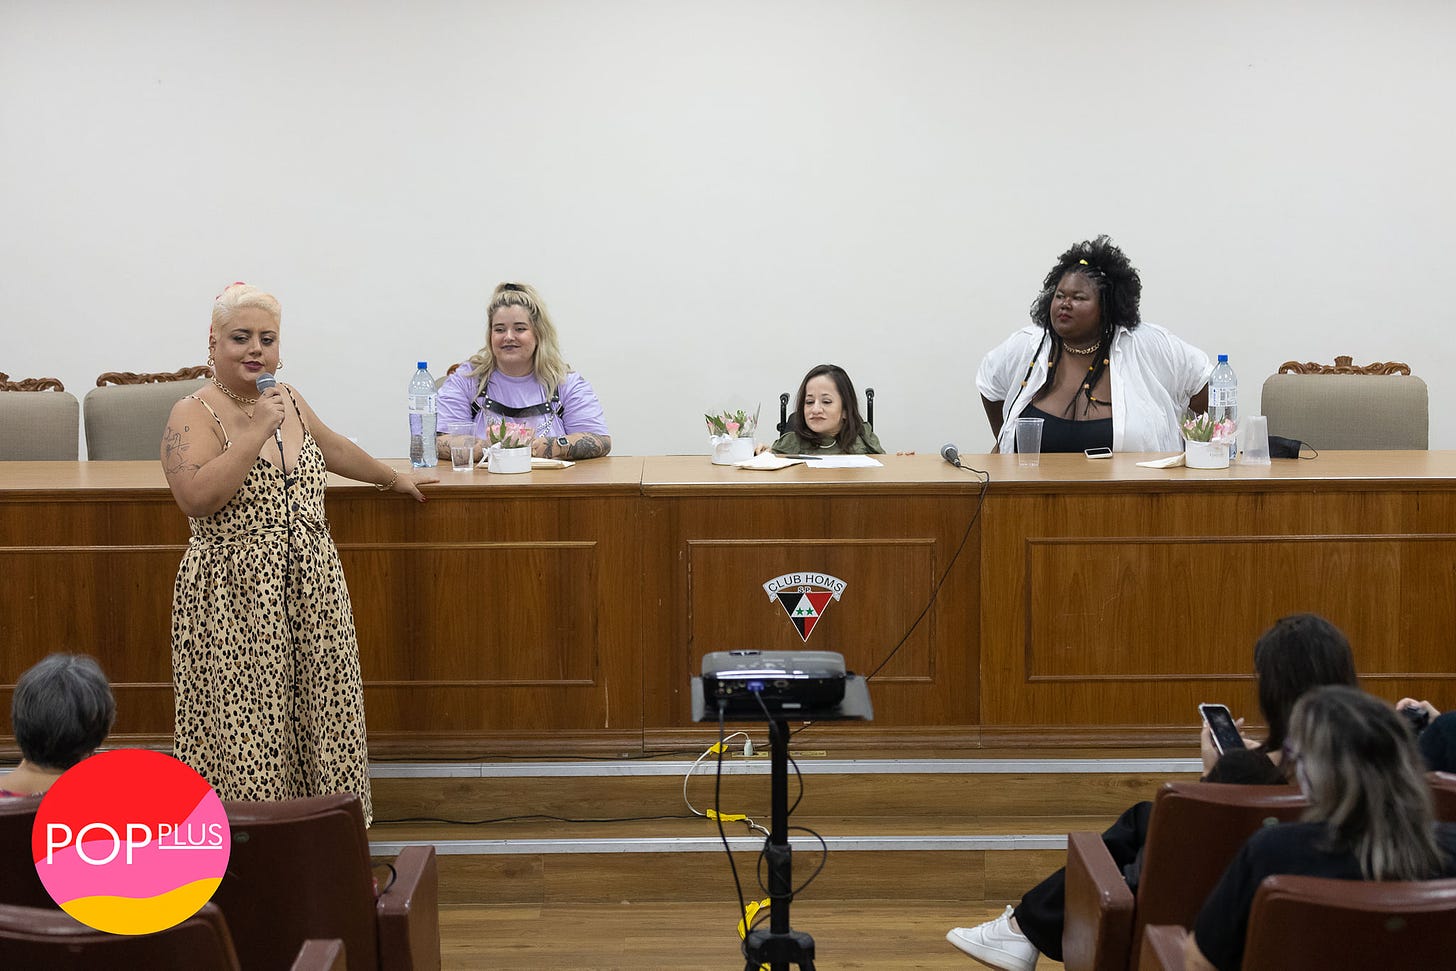 Flávia Durante, Júlia Vecchi, Heloísa Rocha e Genize Ribeiro em debate no Pop Plus